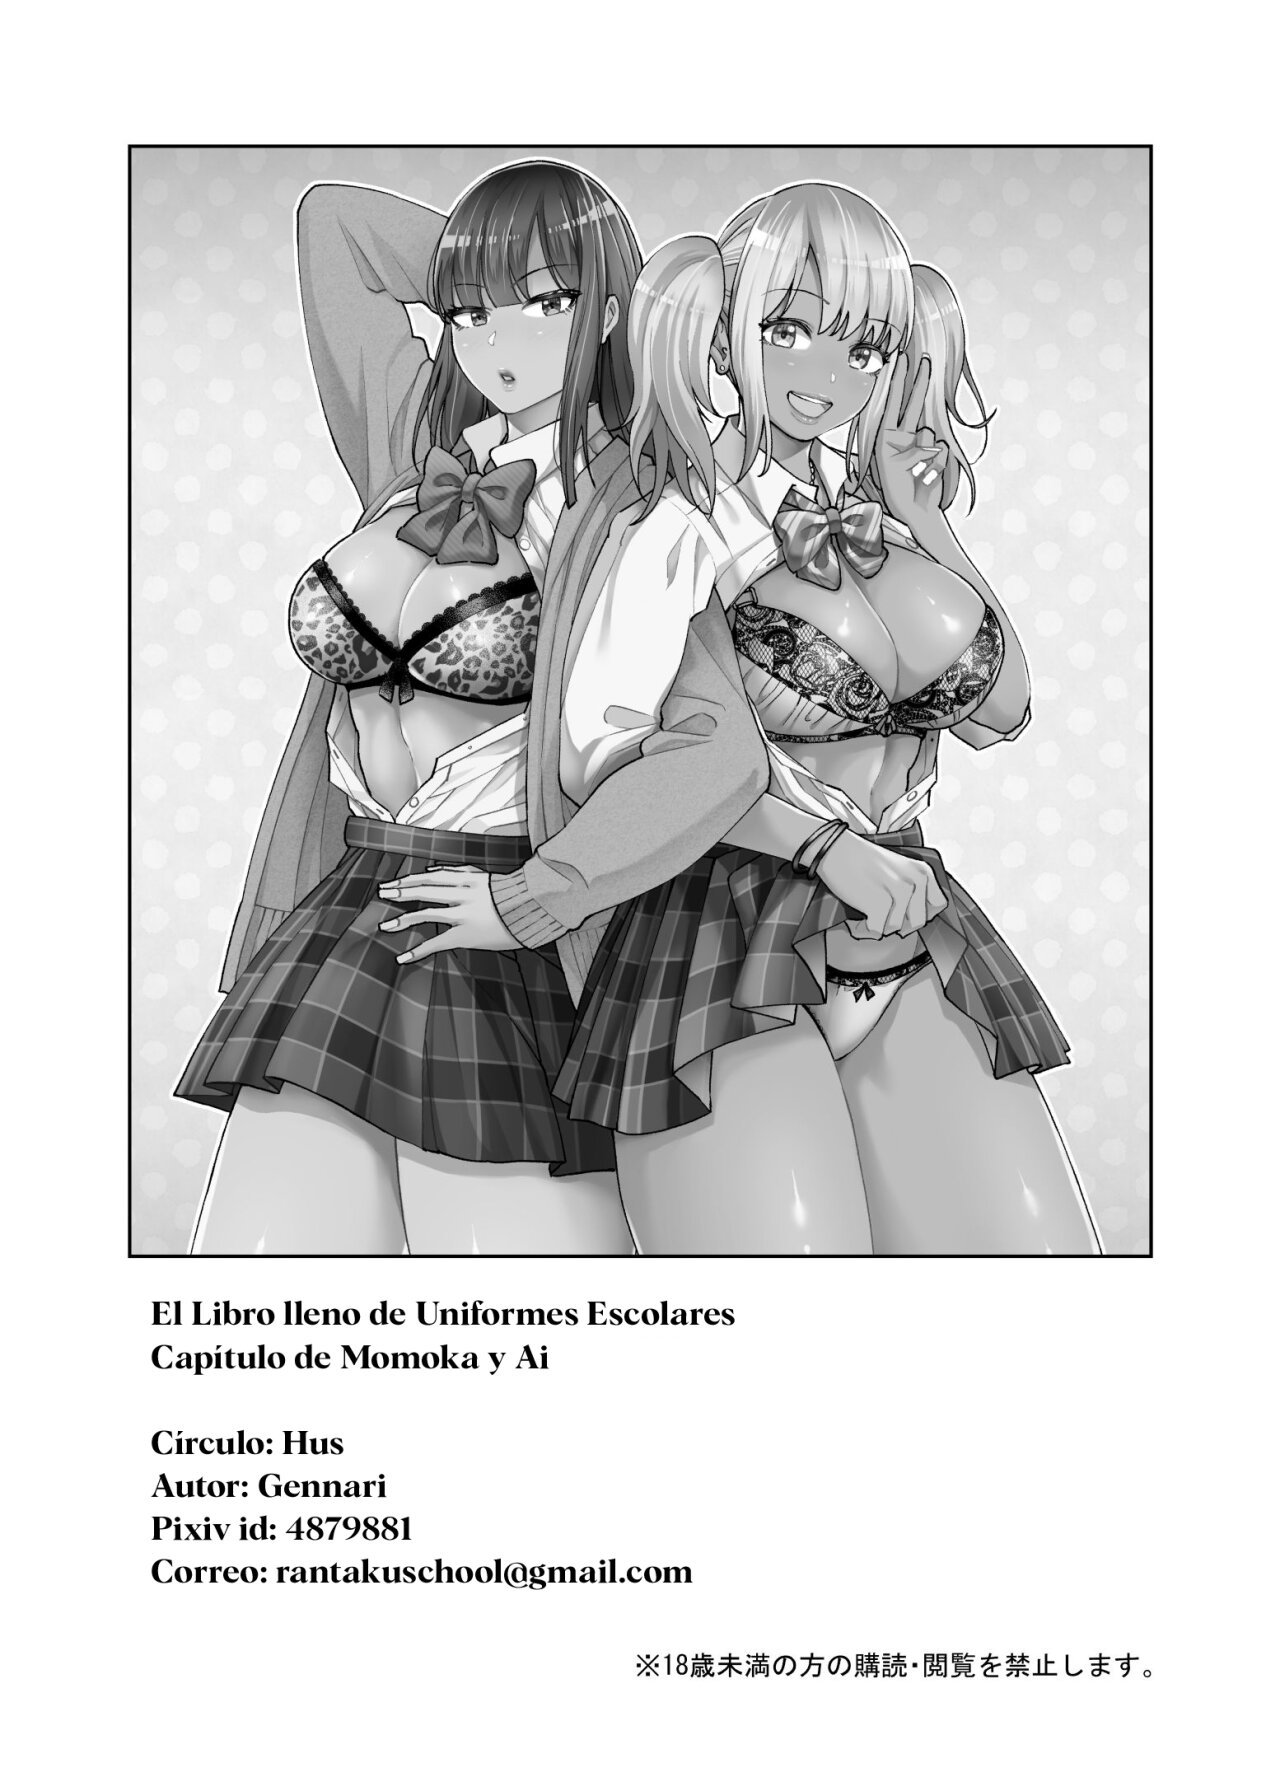 El Libro lleno de uniformes escolares Capitulo de Ai y Momoka - 36